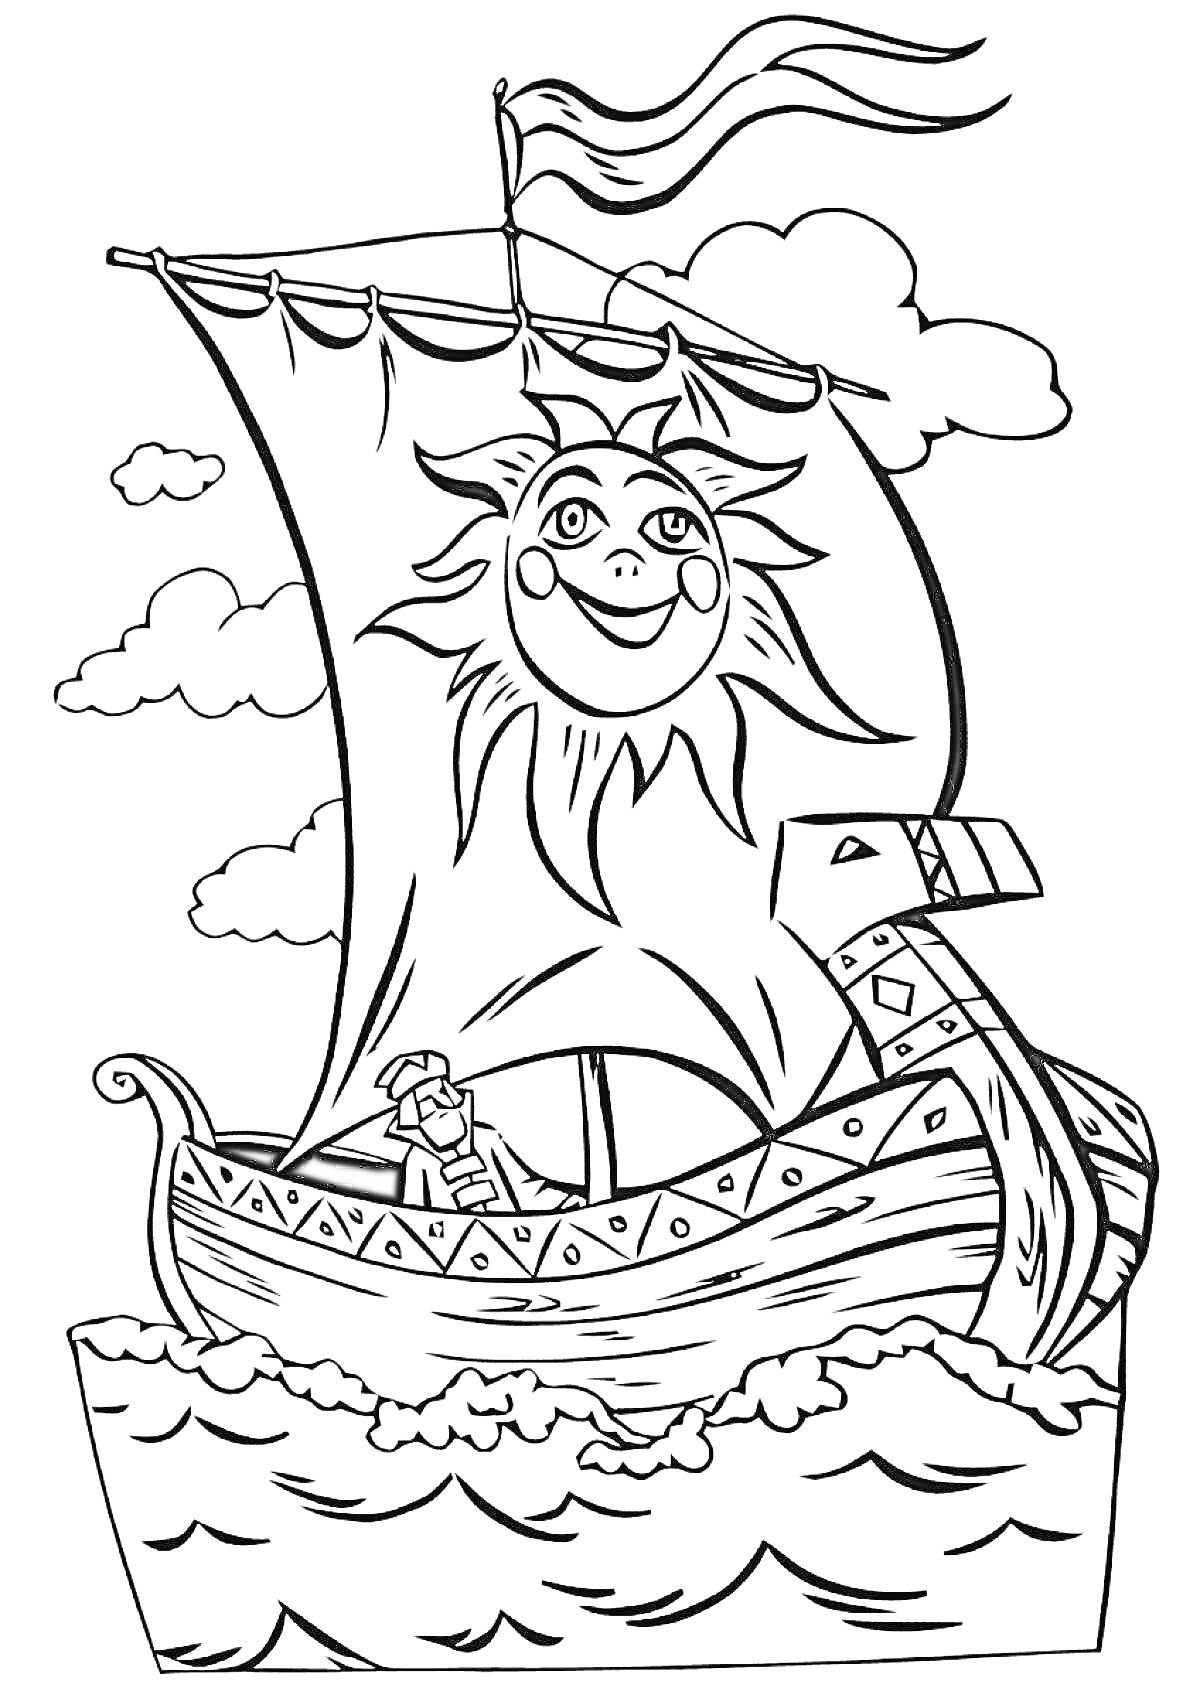 Раскраска Корабль из мультфильма викингов с солнцем на парусе, волны и облака